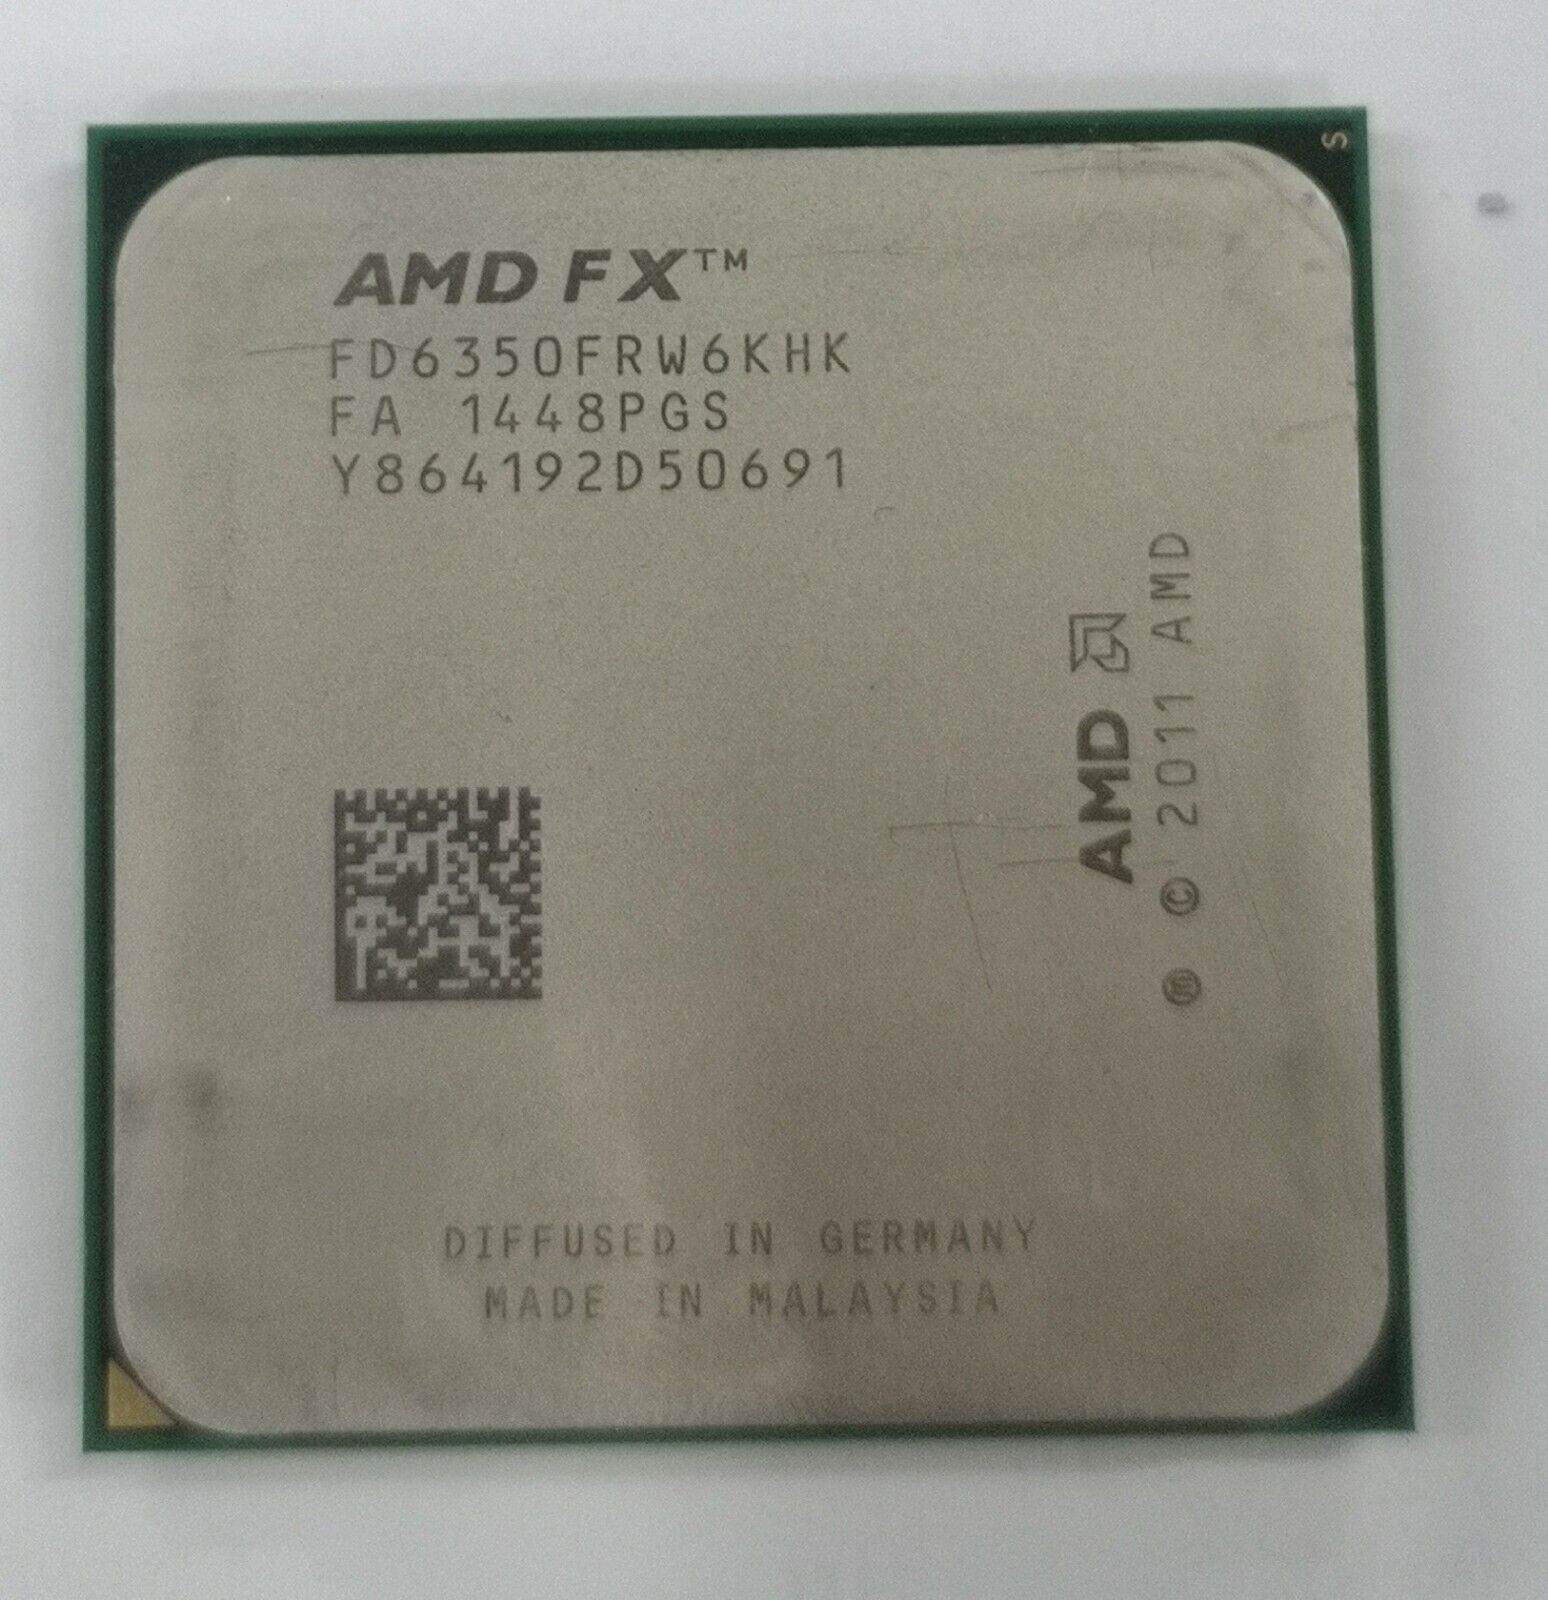 AMD FX-6350 FX-6330 FX-6300 FX-6200 FX-6100 FX-4300 FX-4100 FX-4130 Desktop CPU